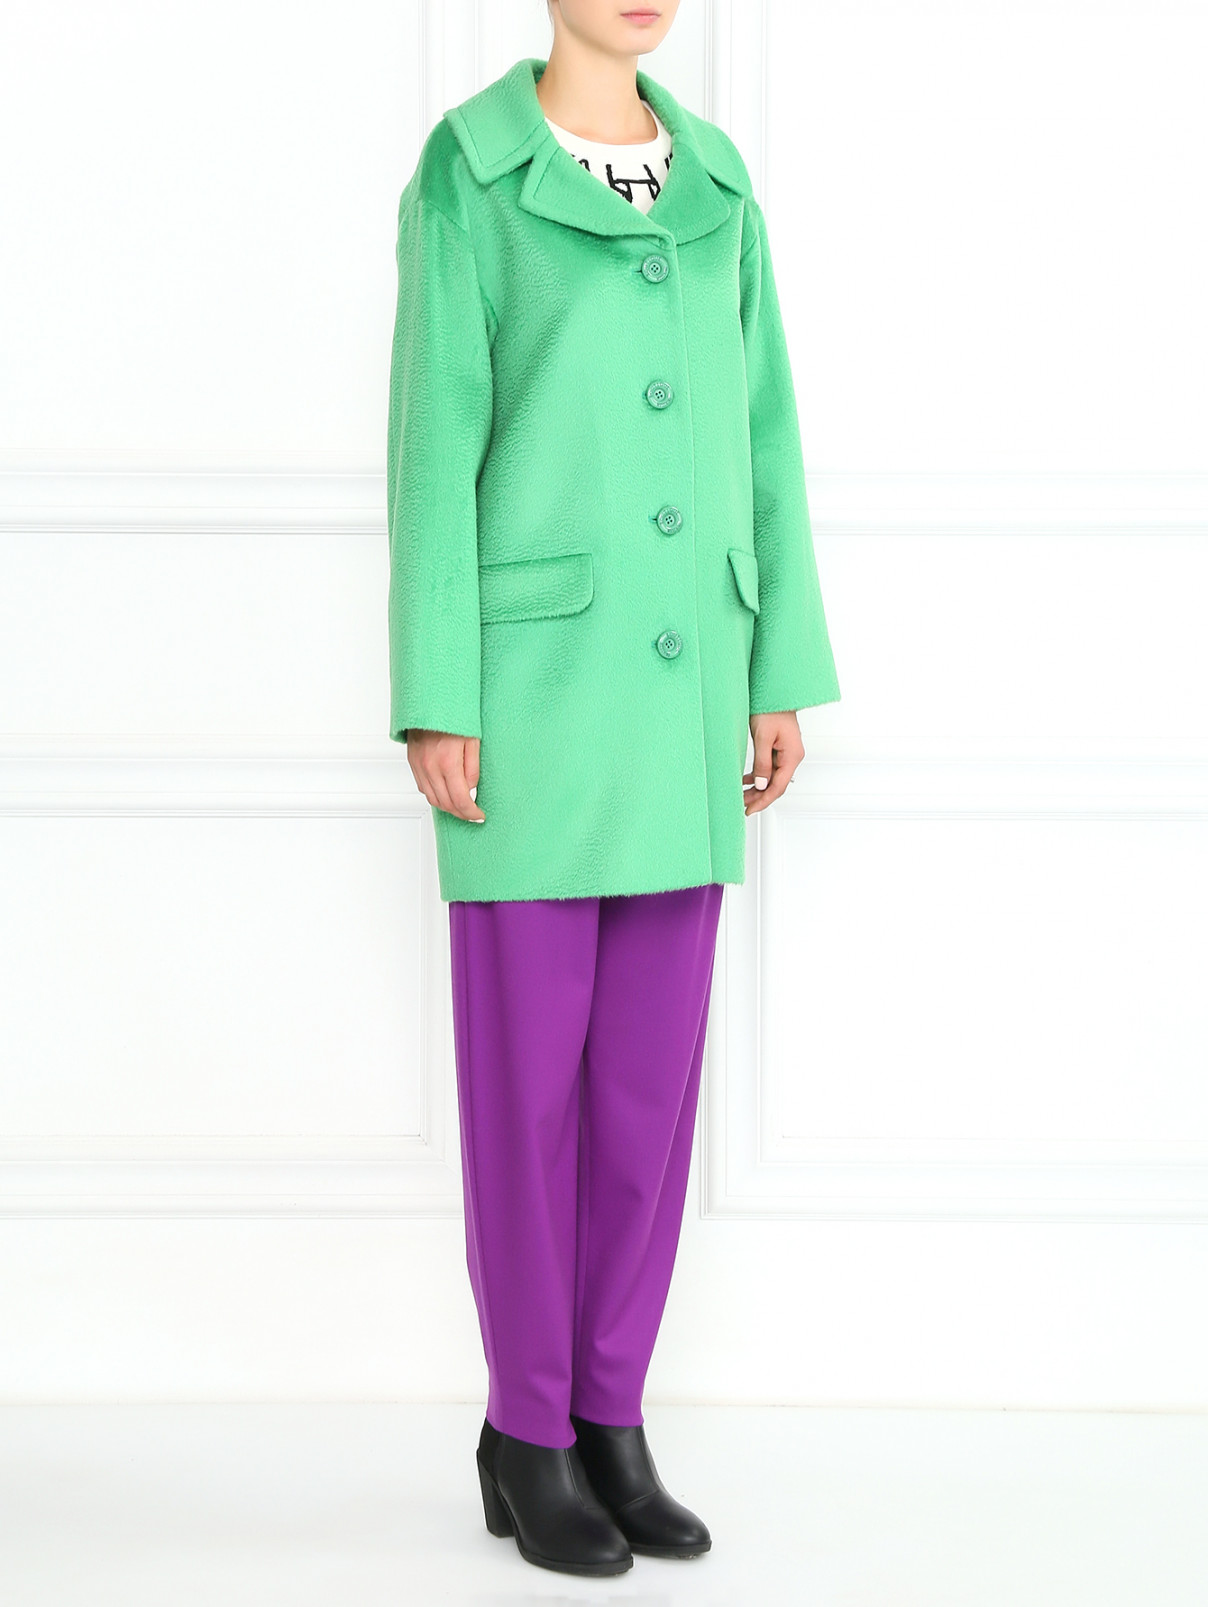 Однобортное пальто из шерсти и мохера Moschino Boutique  –  Модель Общий вид  – Цвет:  Зеленый